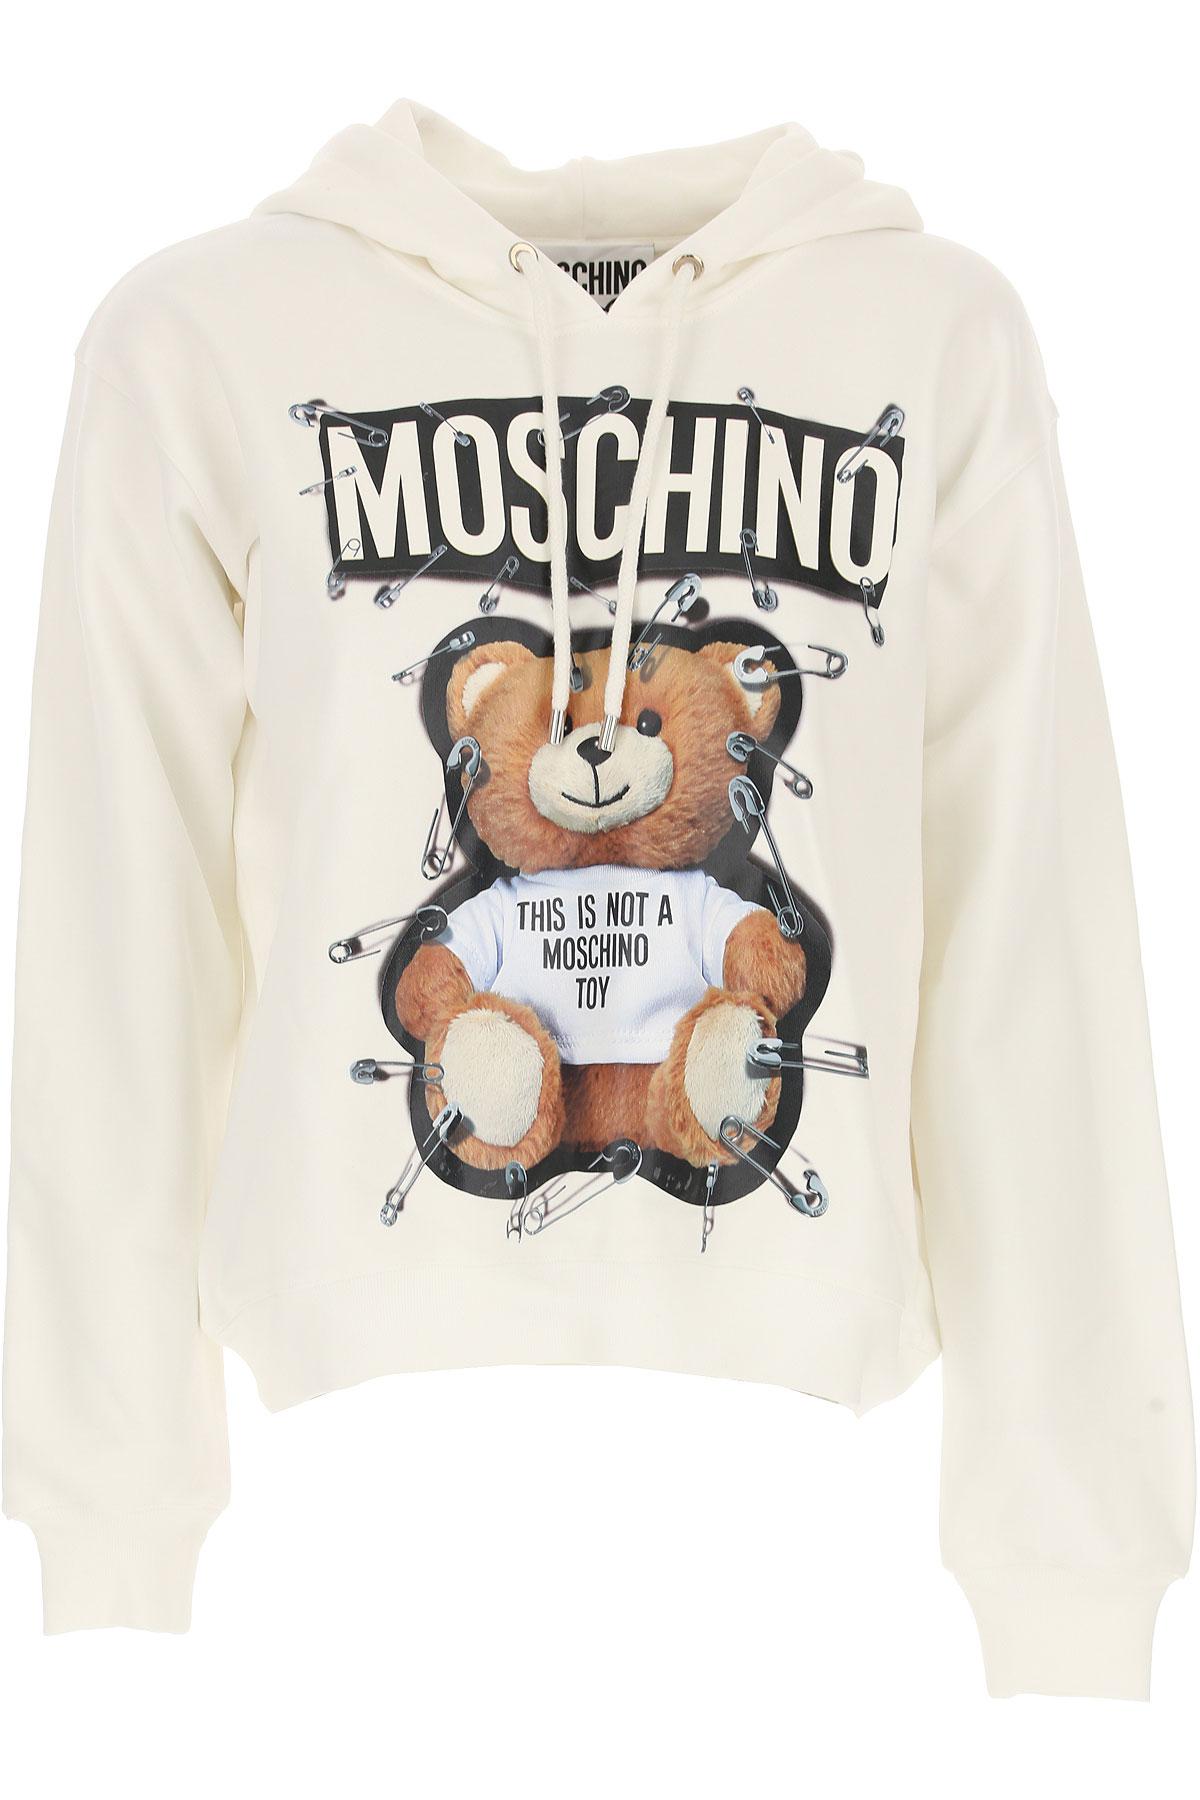 moschino sweatshirt women's sale